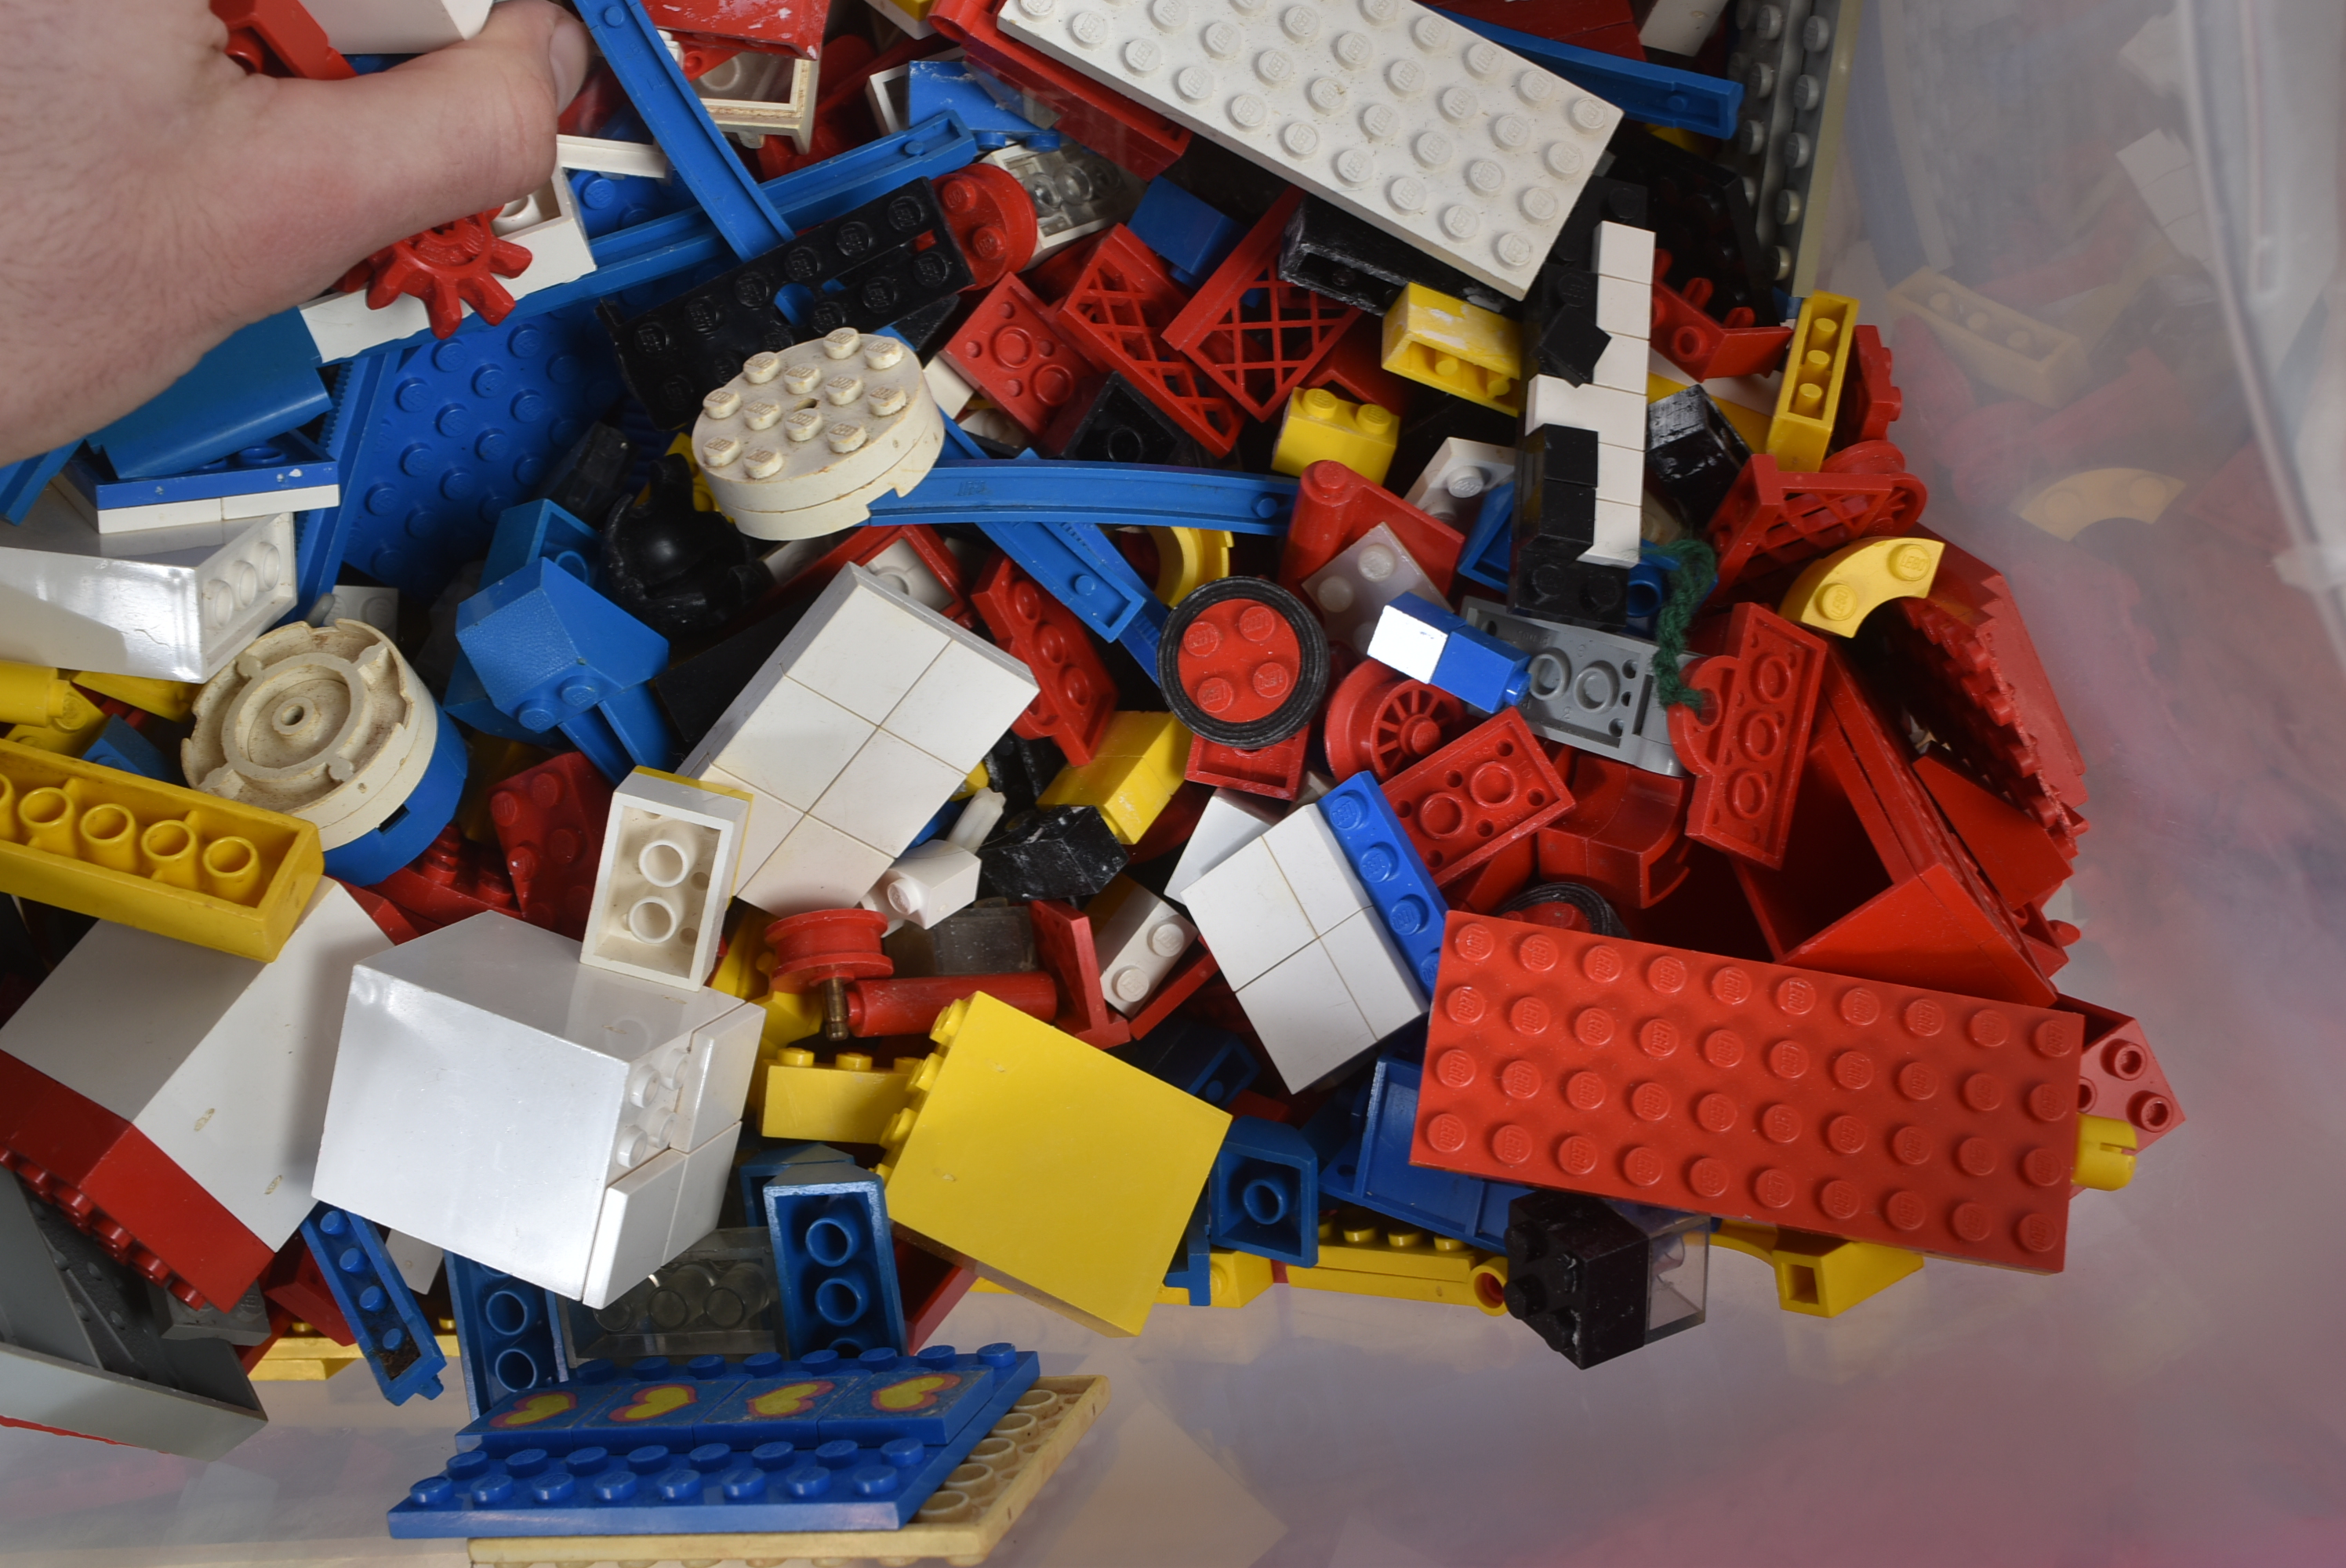 LEGO - VINTAGE LEGO BRICKS AND STORAGE TRAYS - Image 8 of 8